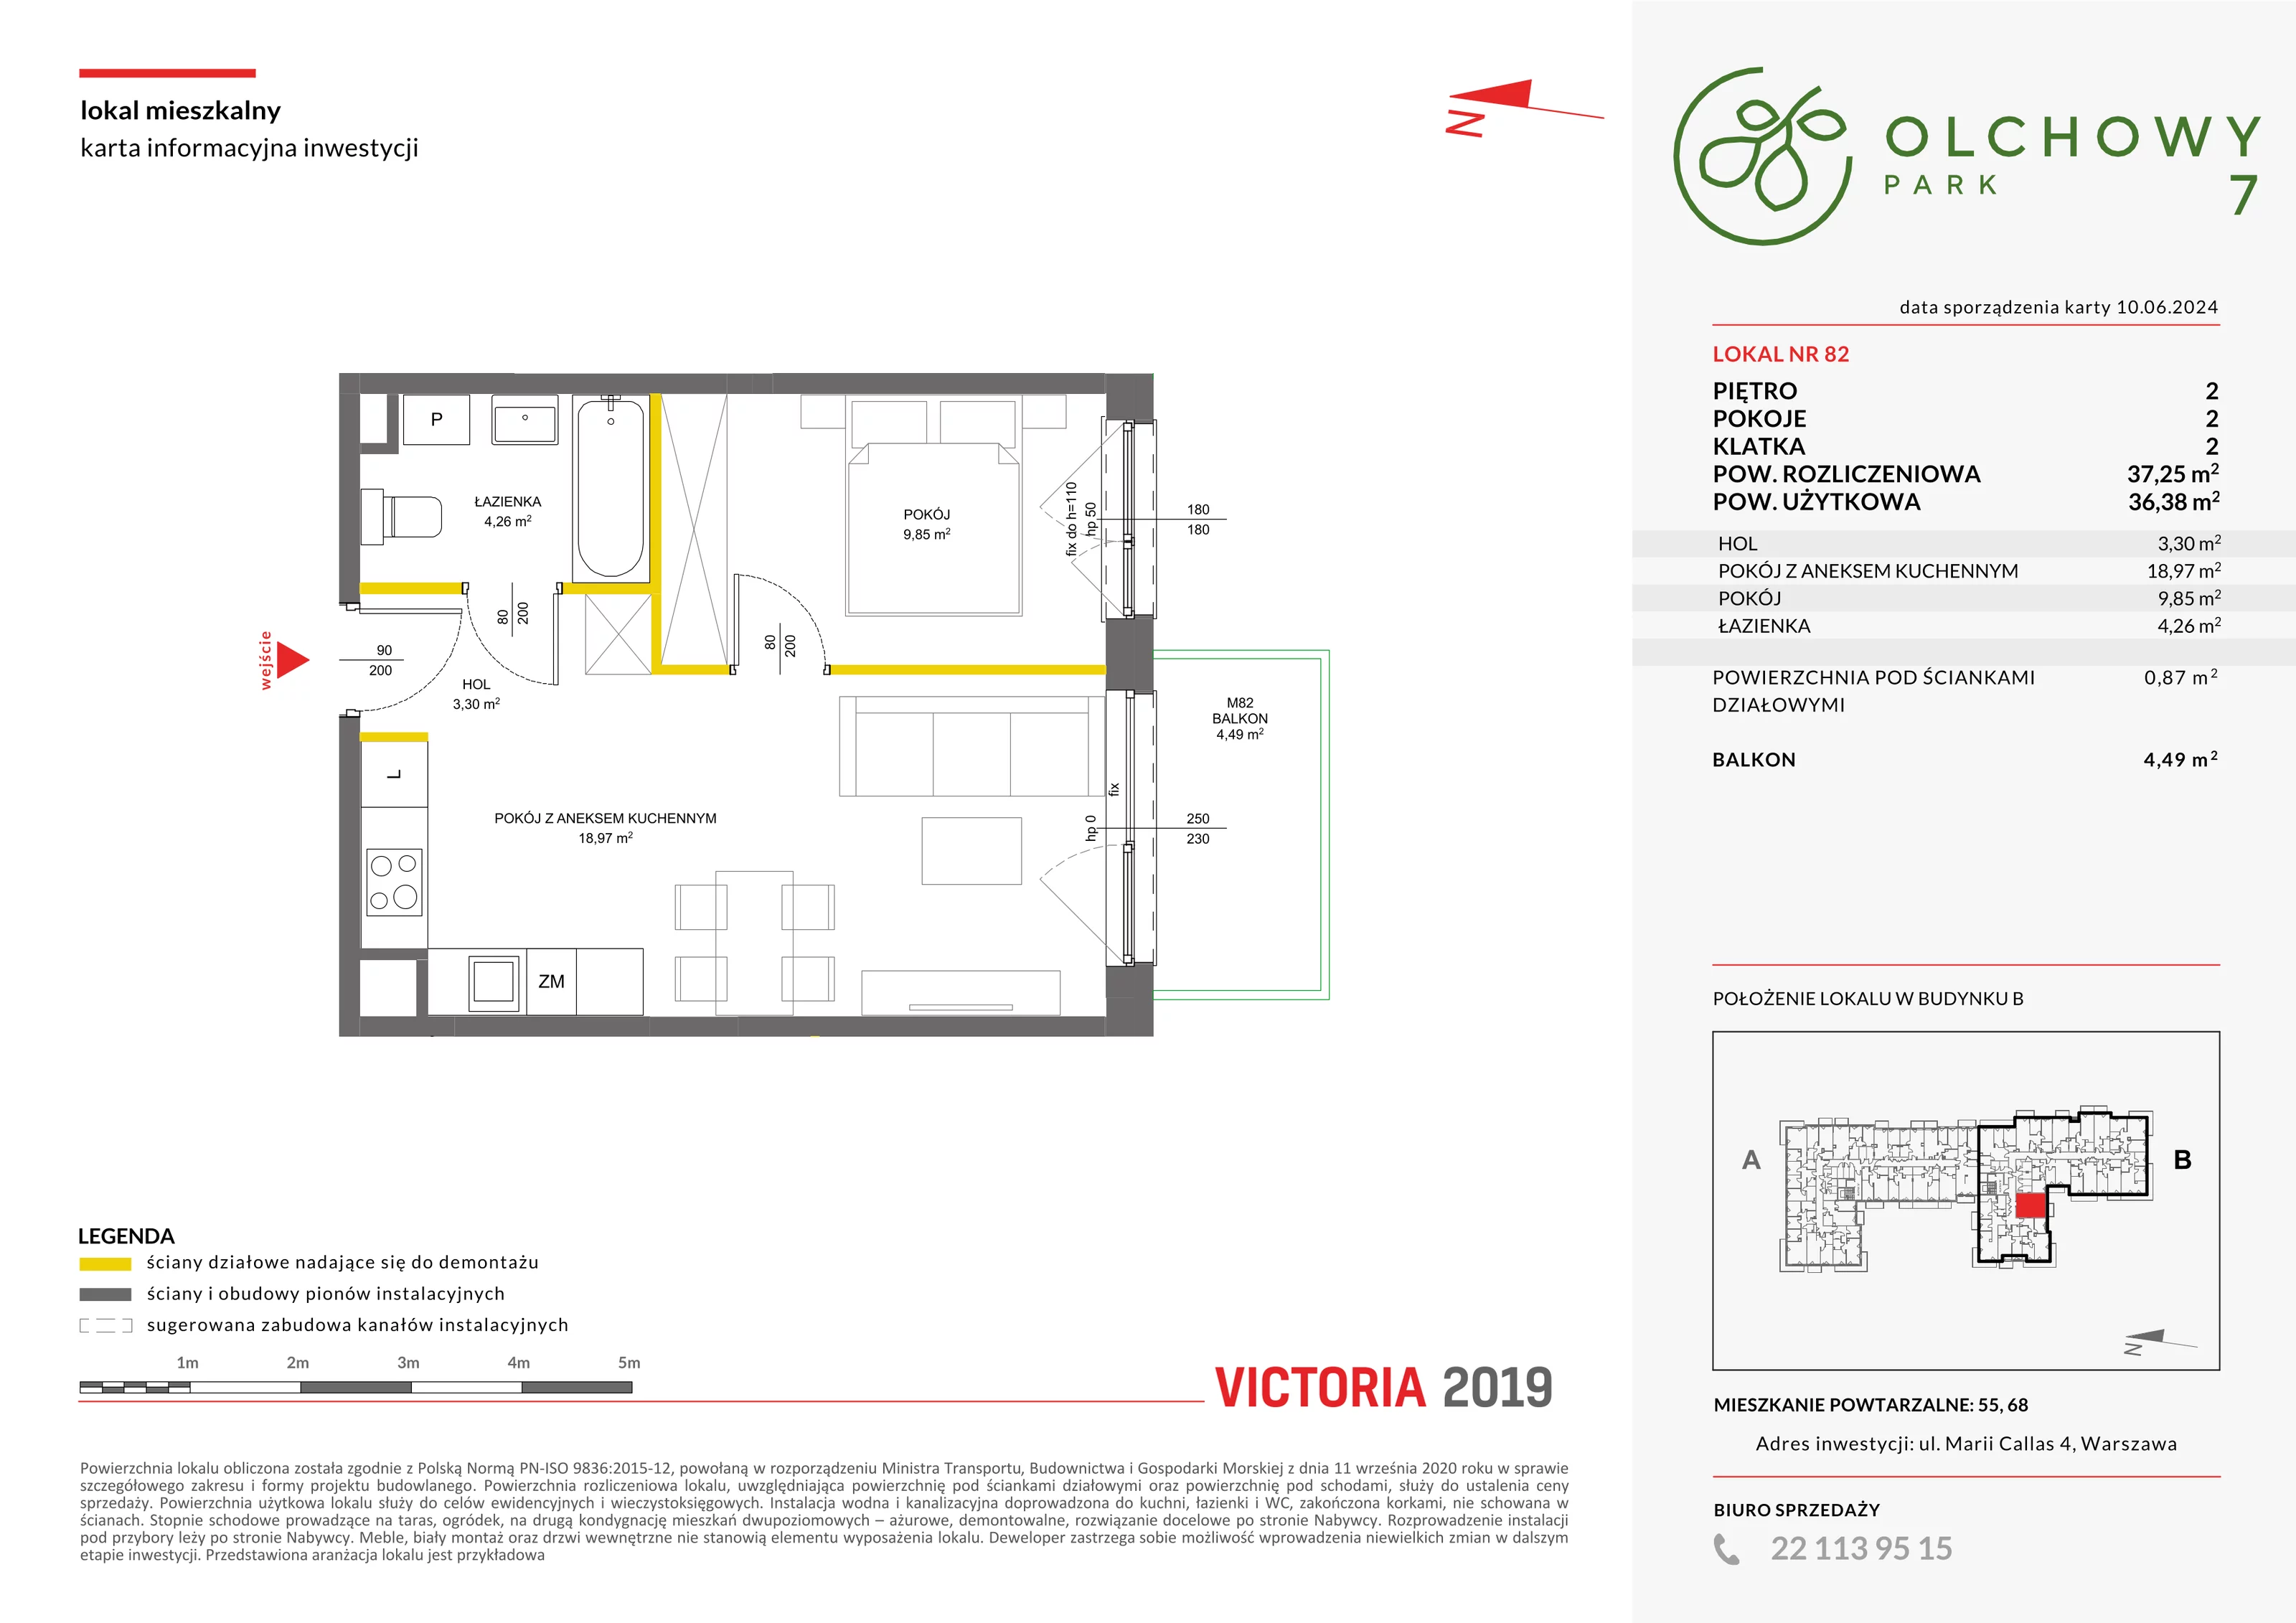 Mieszkanie 37,25 m², piętro 2, oferta nr VII/82, Olchowy Park 7, Warszawa, Białołęka, Kobiałka, ul. Marii Callas 4A